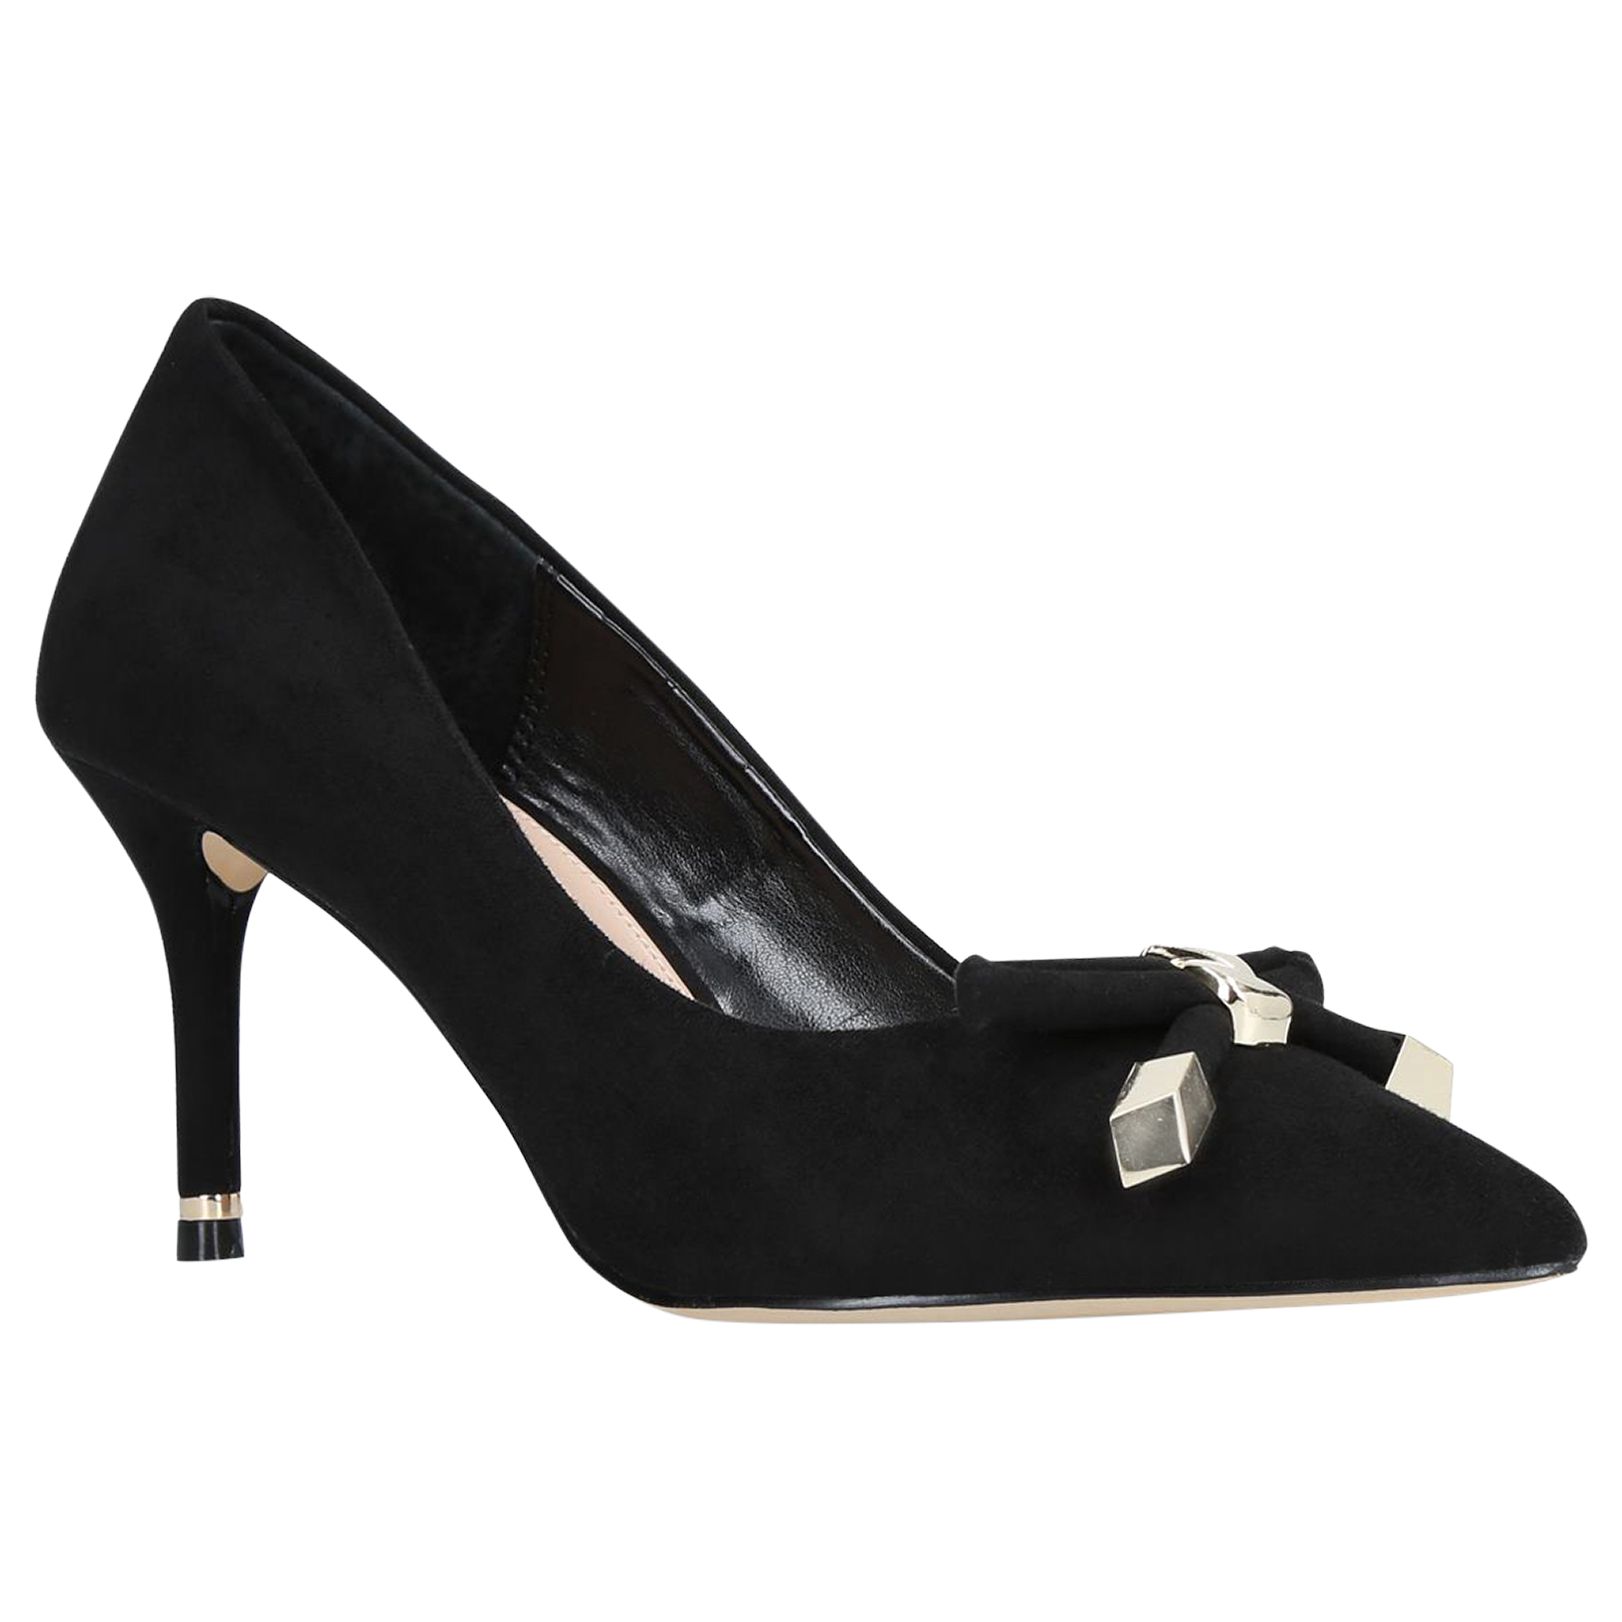 Carvela Kupid Bow Stiletto Heel Court Shoes, Black, 6